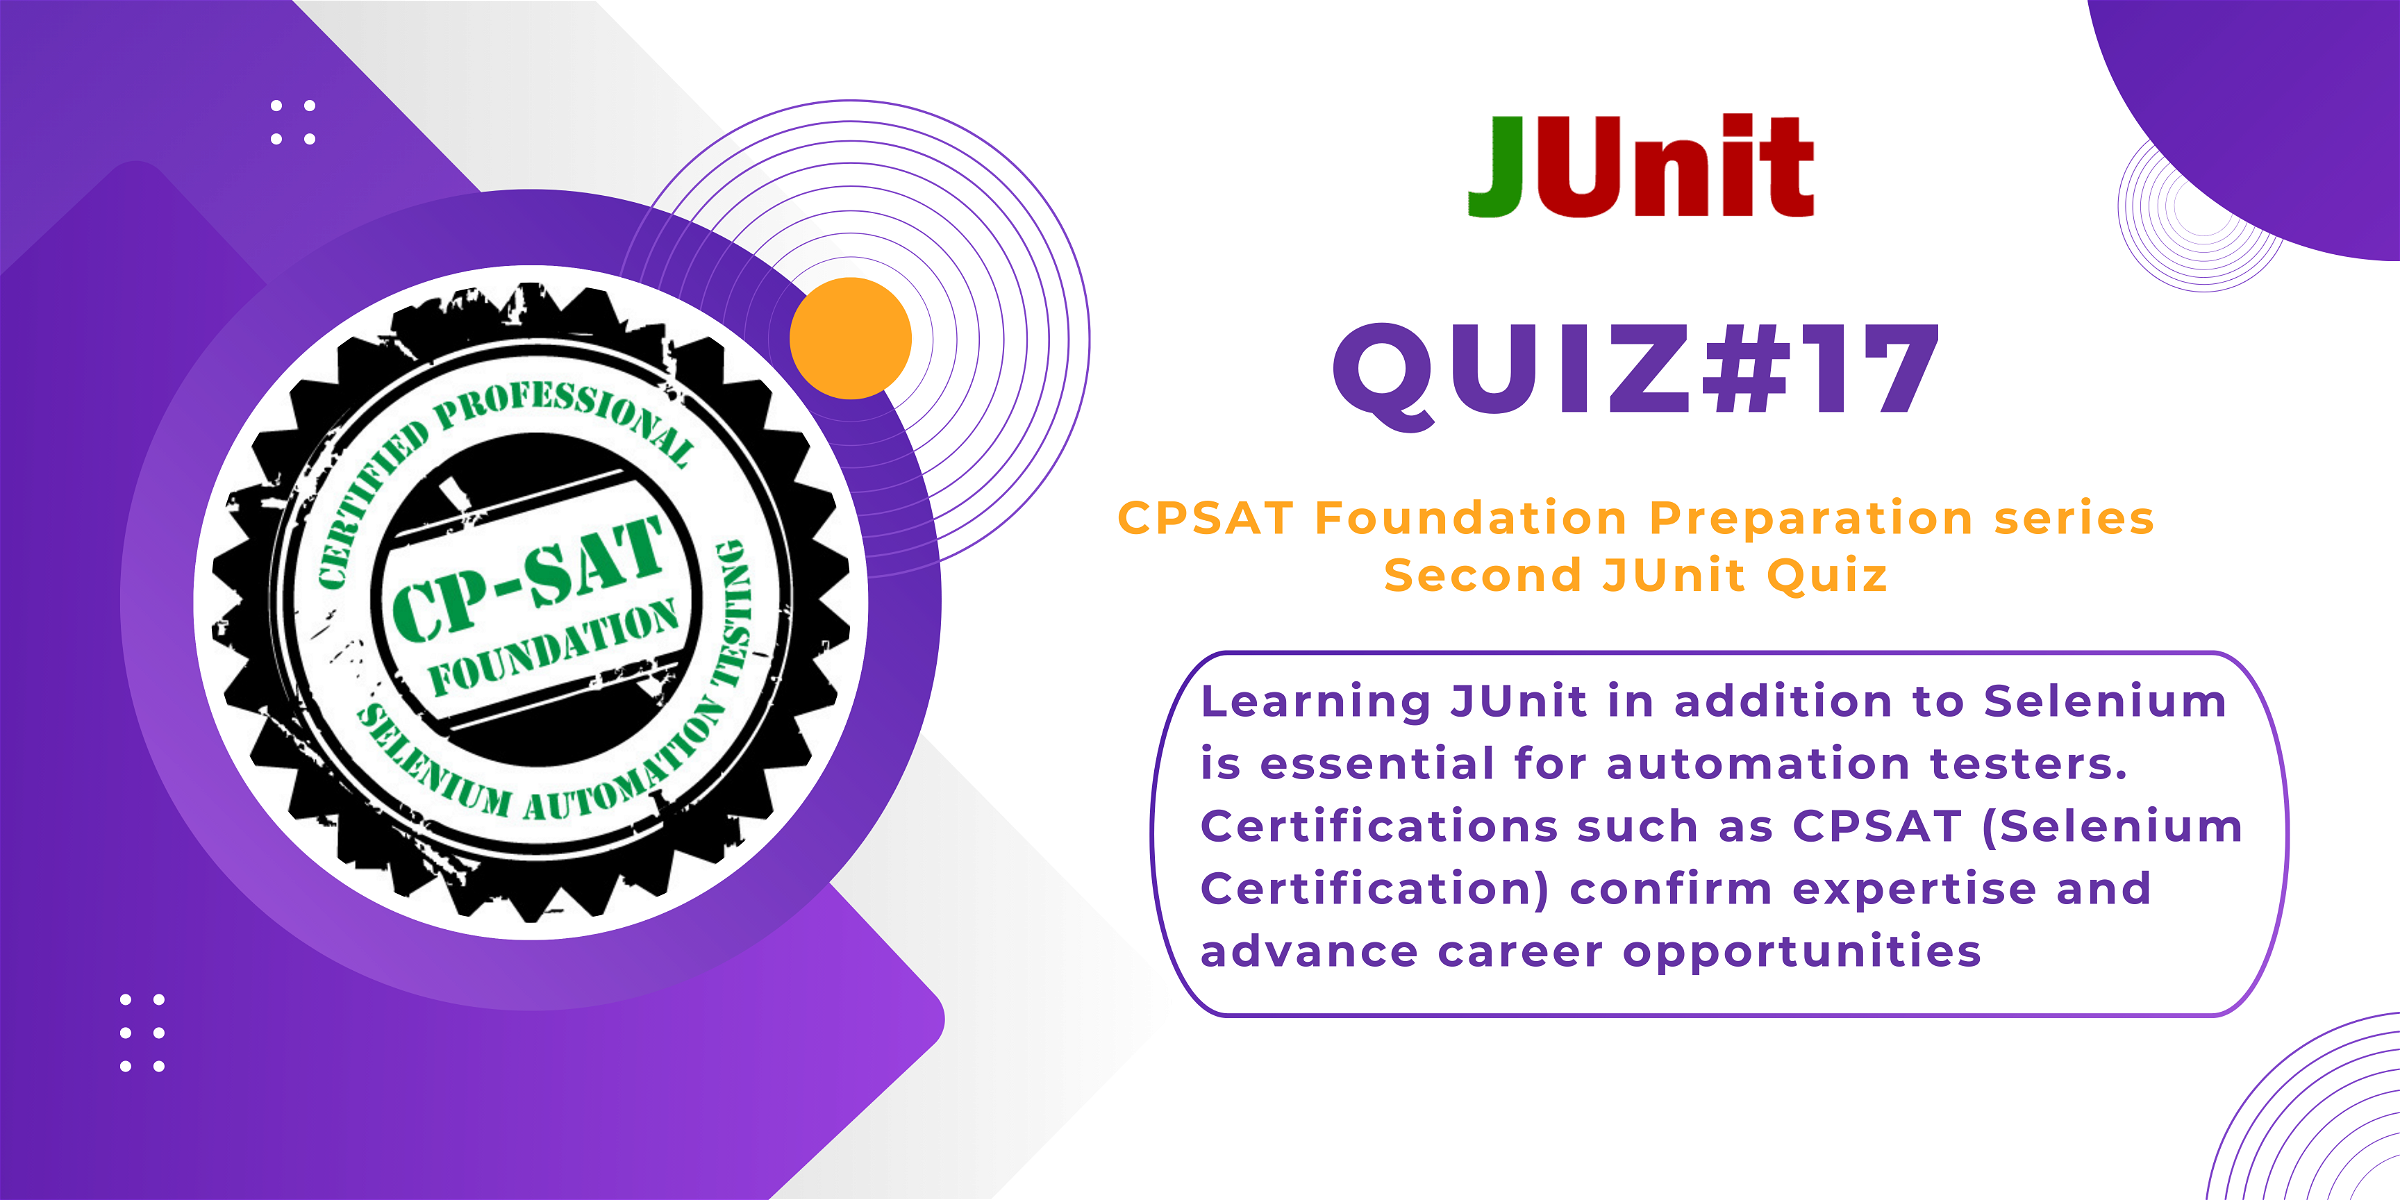 Quiz#17 CPSAT (Selenium Certification) preparation series